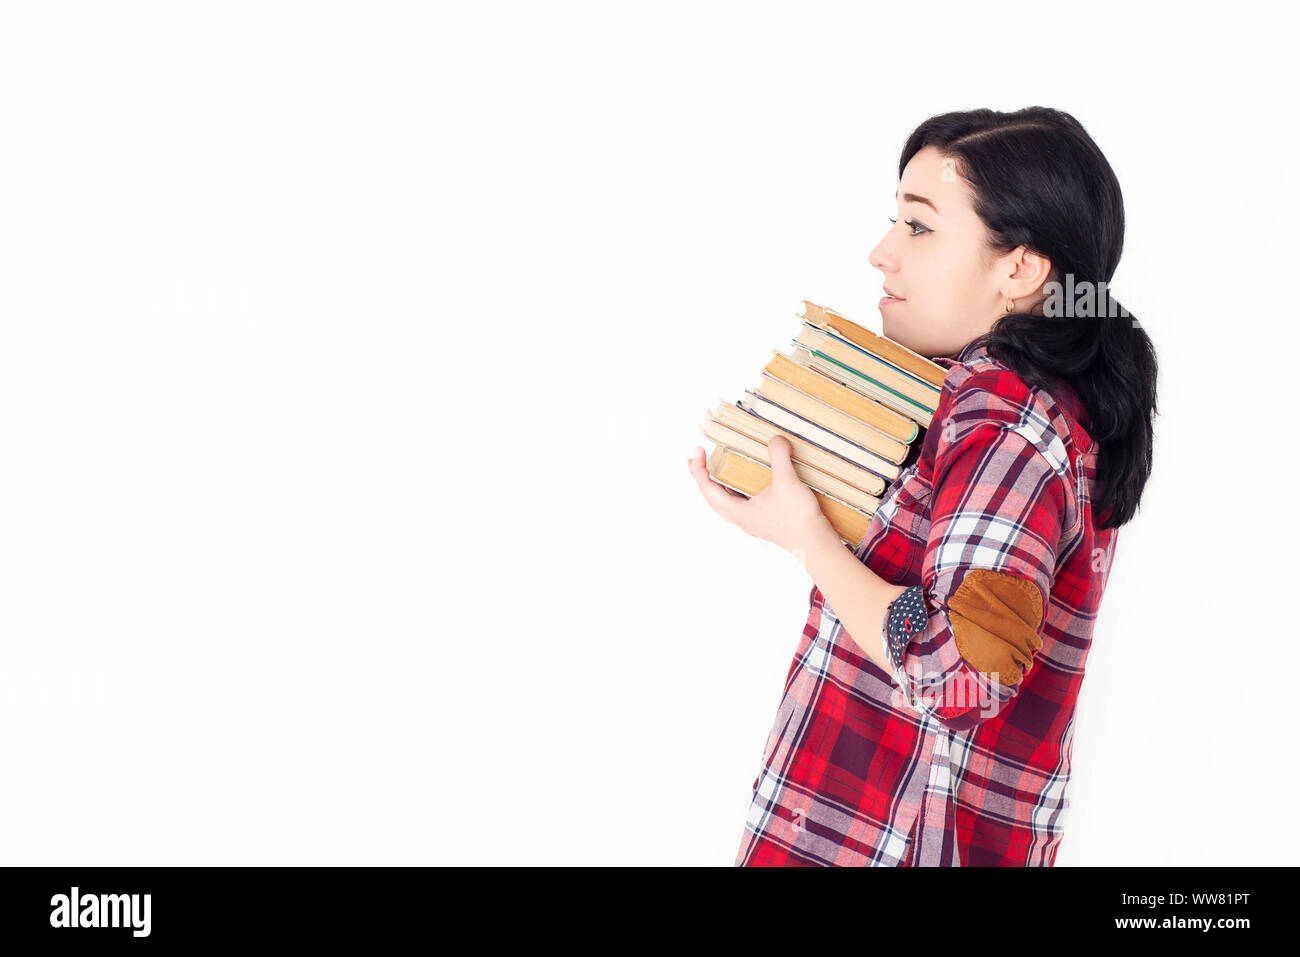 Una giovane studentessa in una camicia rossa di plaid che tiene una pila pesante di vecchi libri o libri di testo. Preparazione all'ammissione all'università, alla sessione o agli esami. Foto Stock